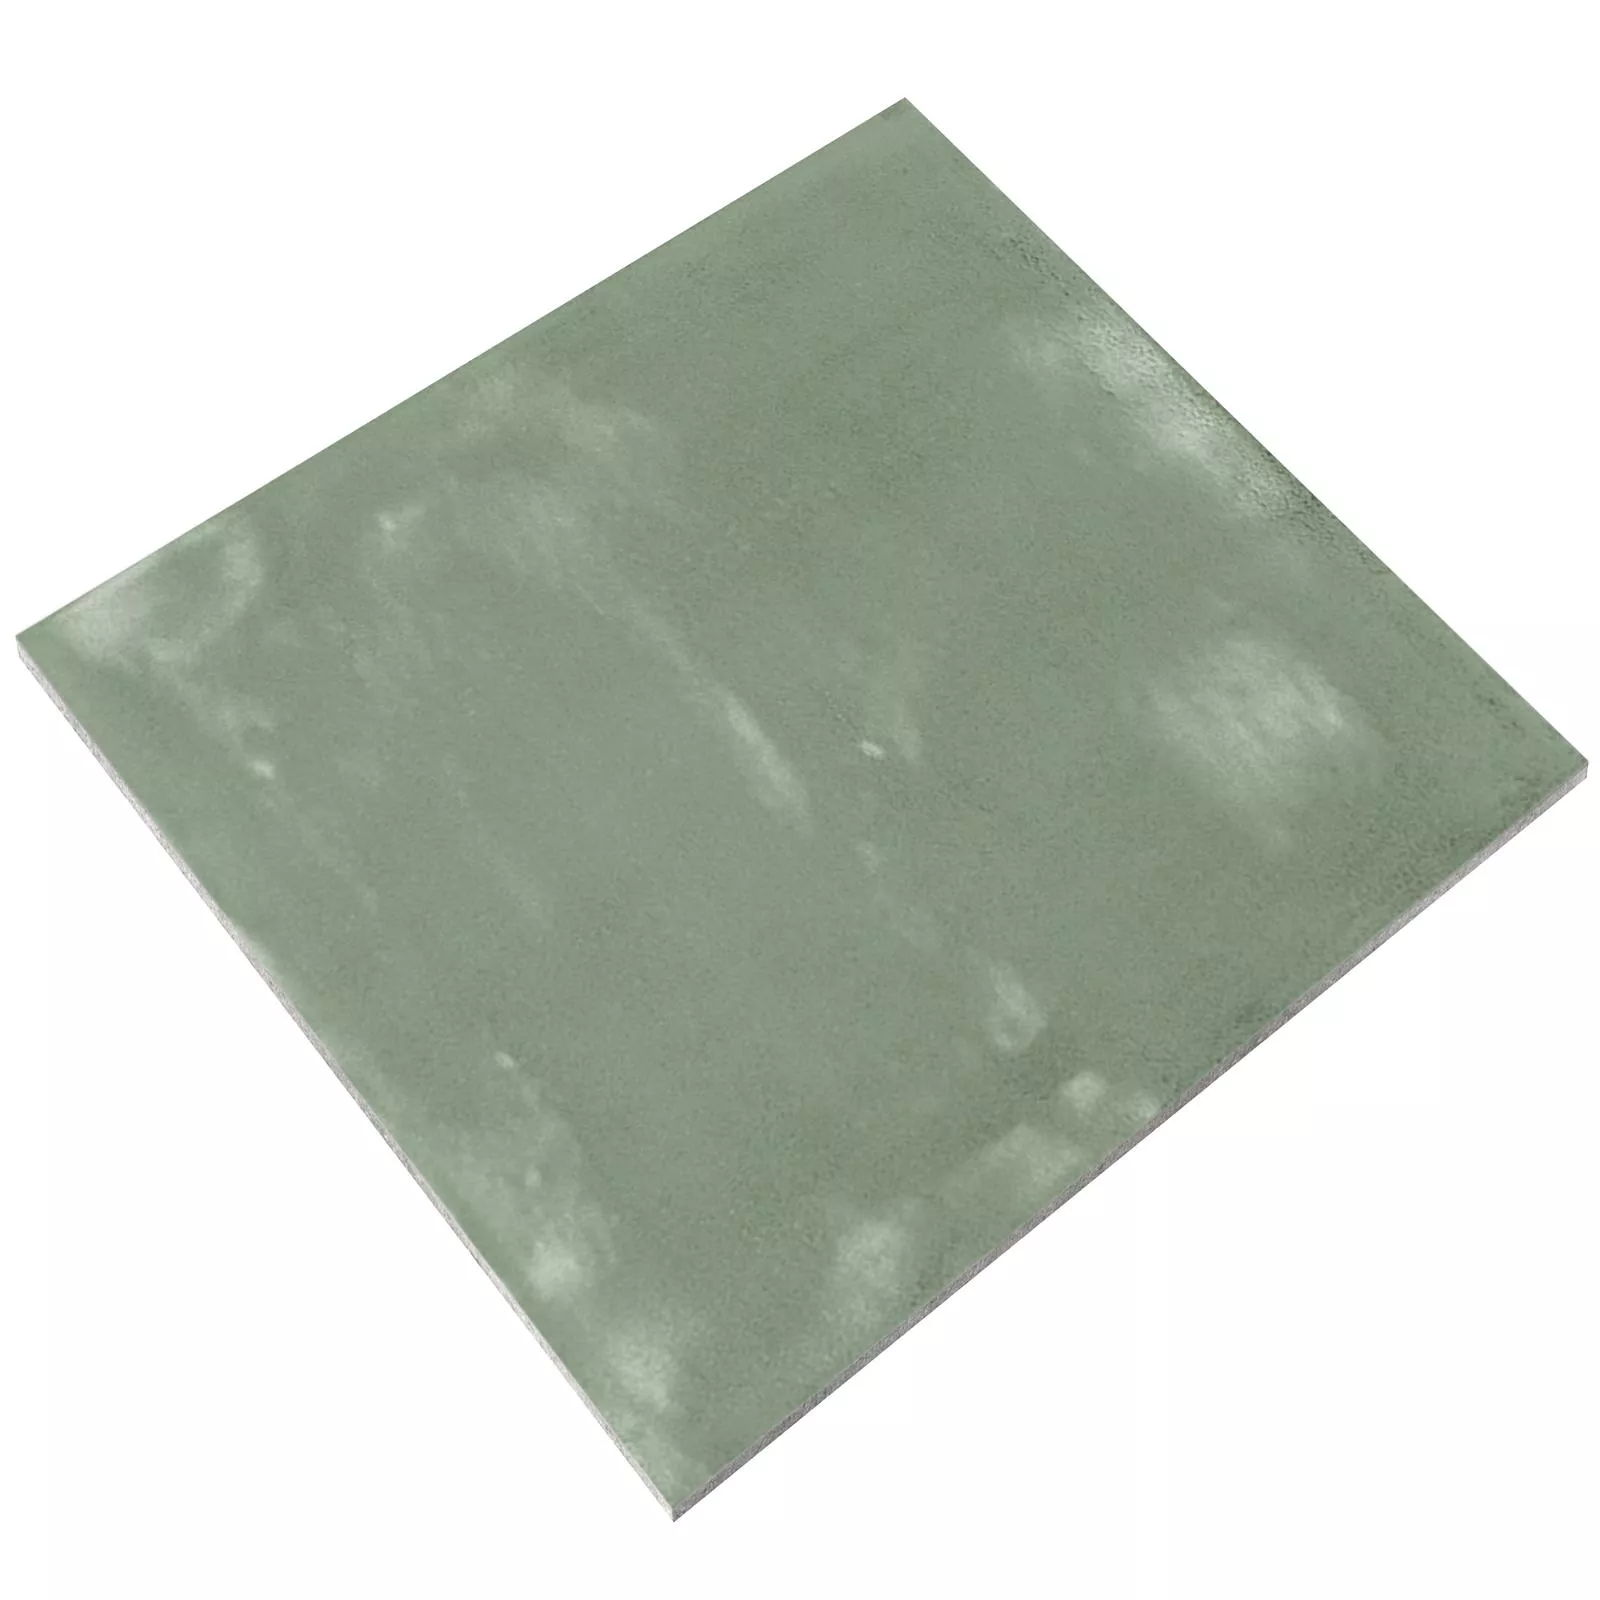 Próbka Płytki Ścienne Marbella Karbowany 15x15cm Zielony